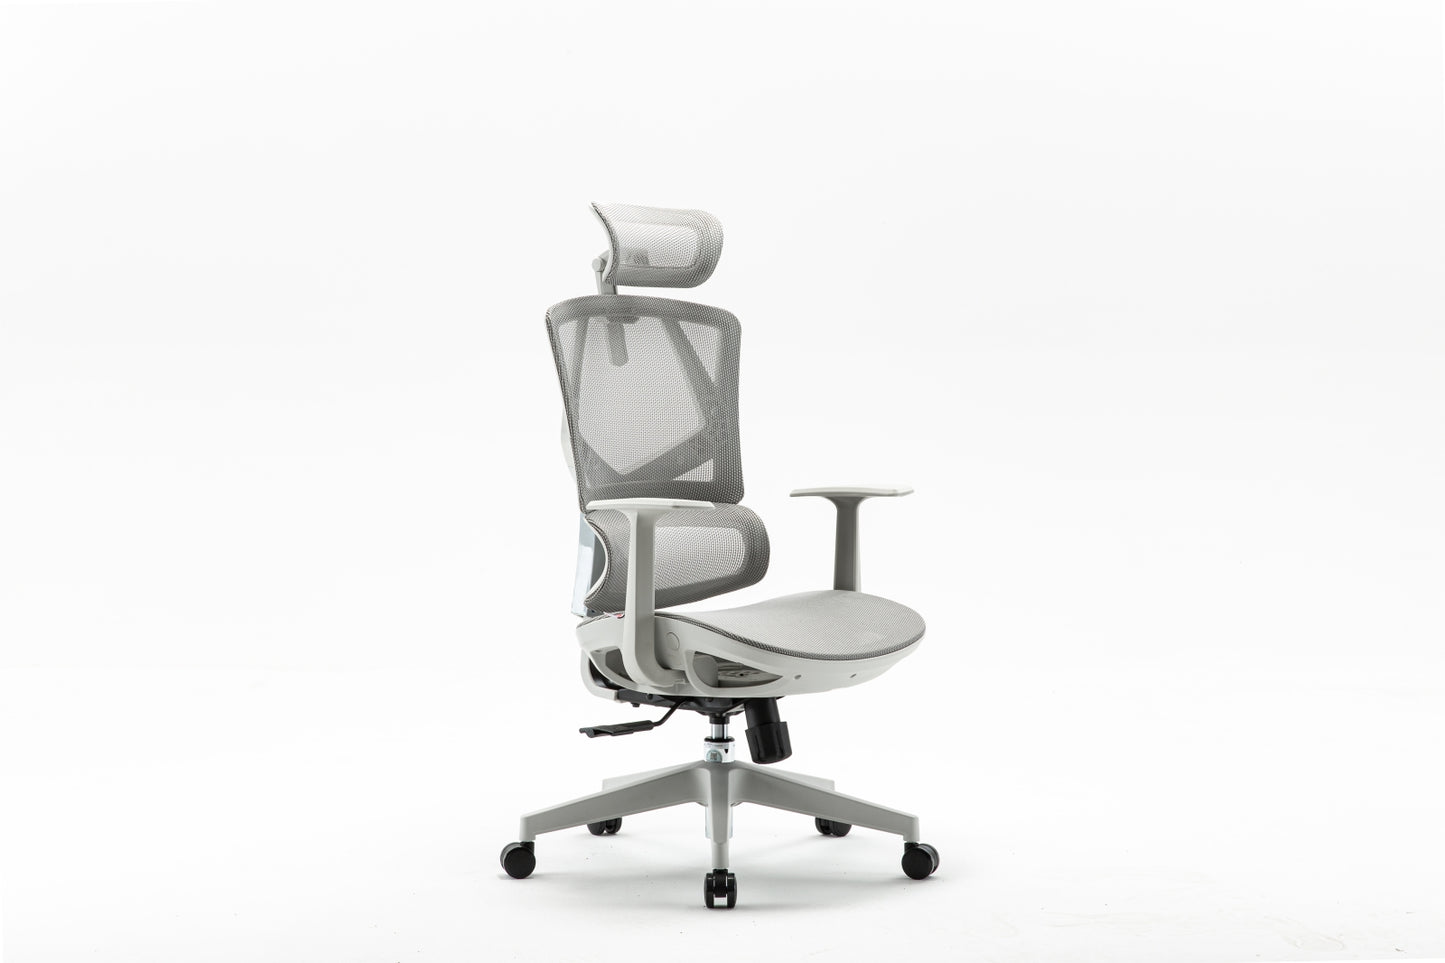 SihooxSphinda M91C Ergonomic Chair